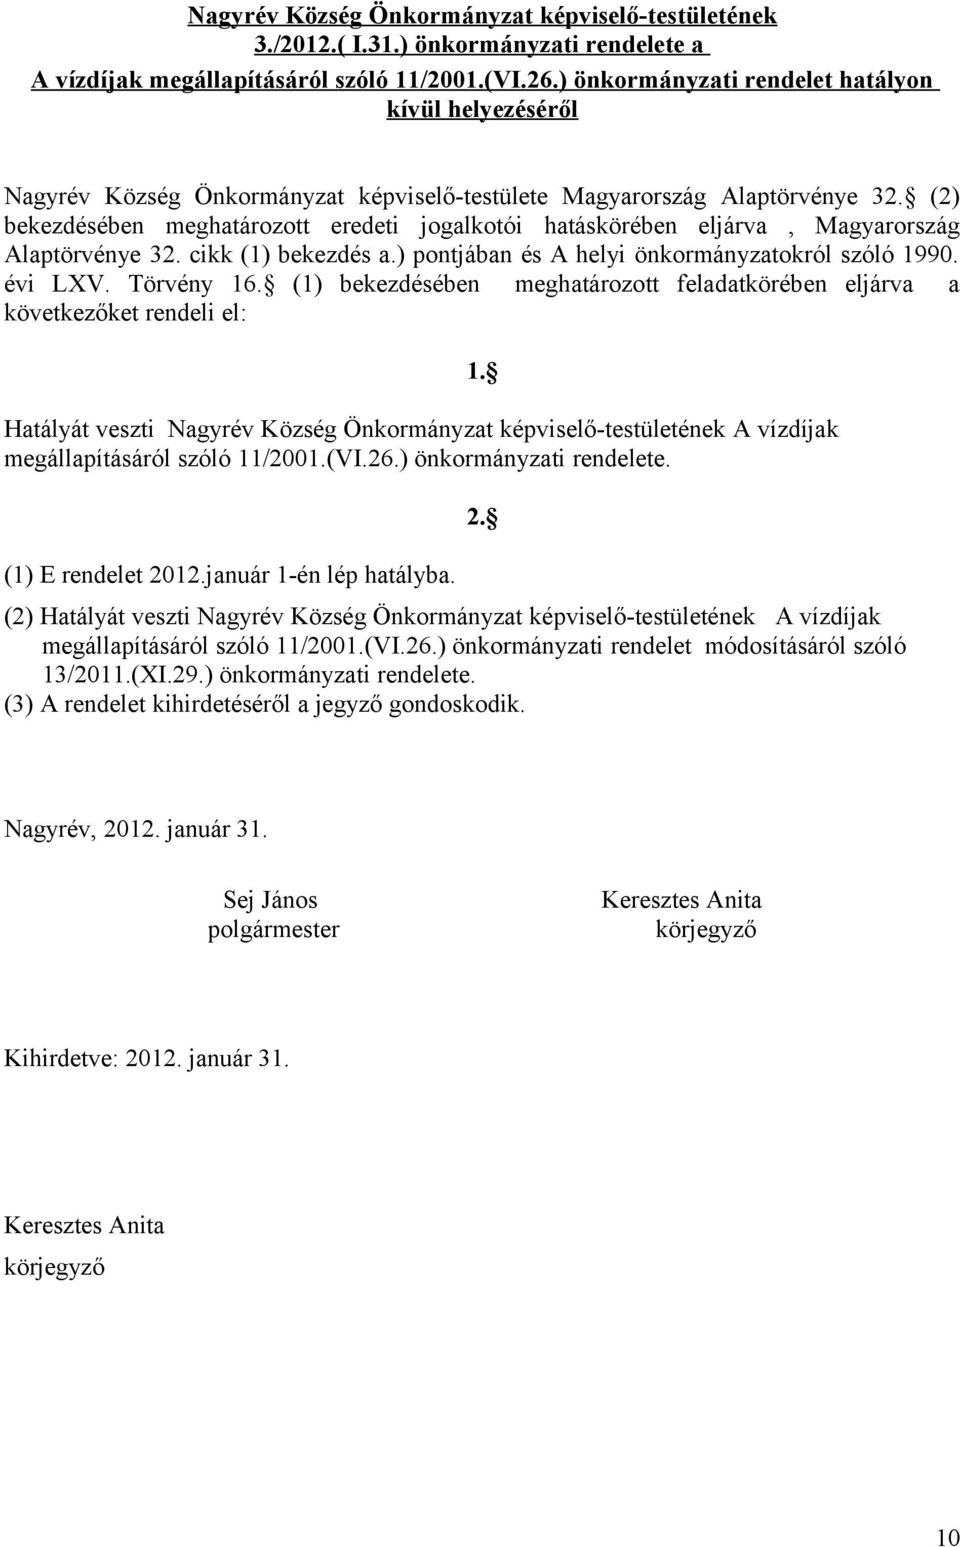 (2) bekezdésében meghatározott eredeti jogalkotói hatáskörében eljárva, Magyarország Alaptörvénye 32. cikk (1) bekezdés a.) pontjában és A helyi önkormányzatokról szóló 1990. évi LXV. Törvény 16.